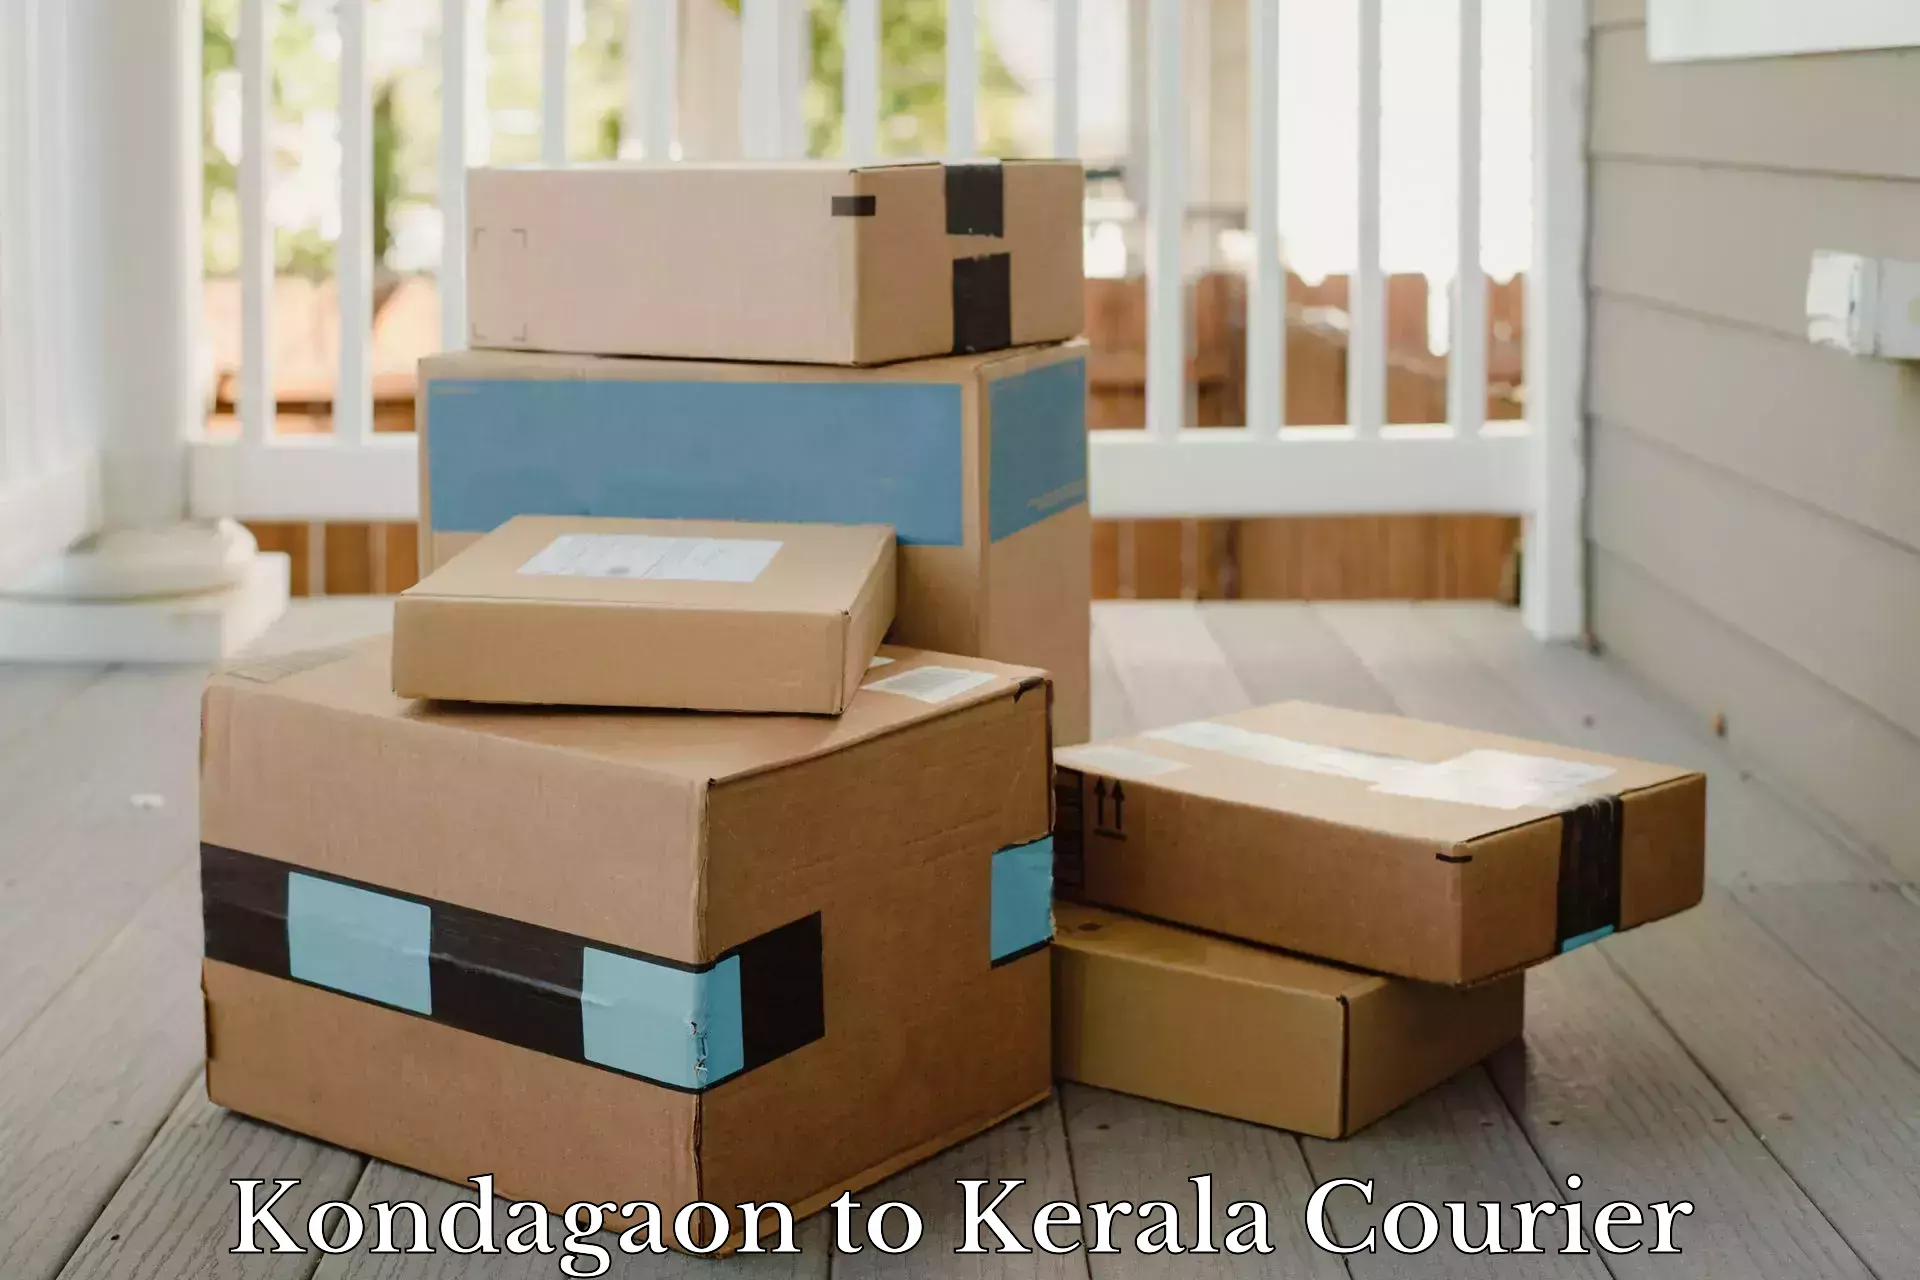 Courier dispatch services Kondagaon to NIT Calicut